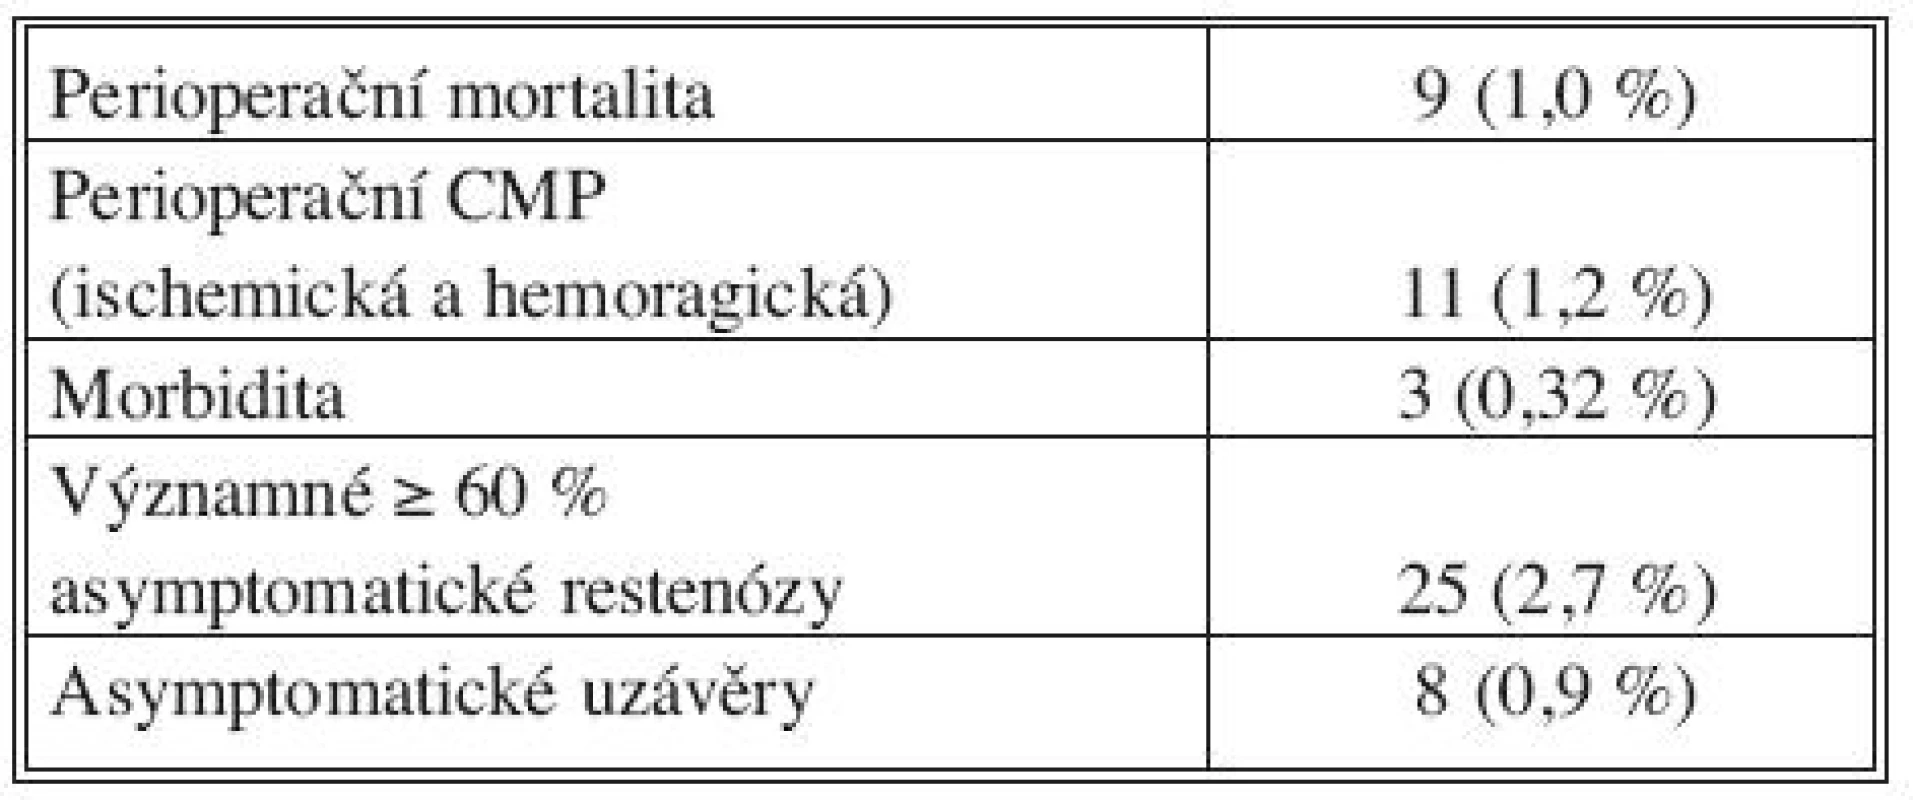 Výsledky operací vnitřních karotid na chirurgické klinice v Plzni (období 2002–2008)
Tab. 3. Outcomes of internal carotid procedures in the Plzeň Surgical Clinic (2002–2008 period)